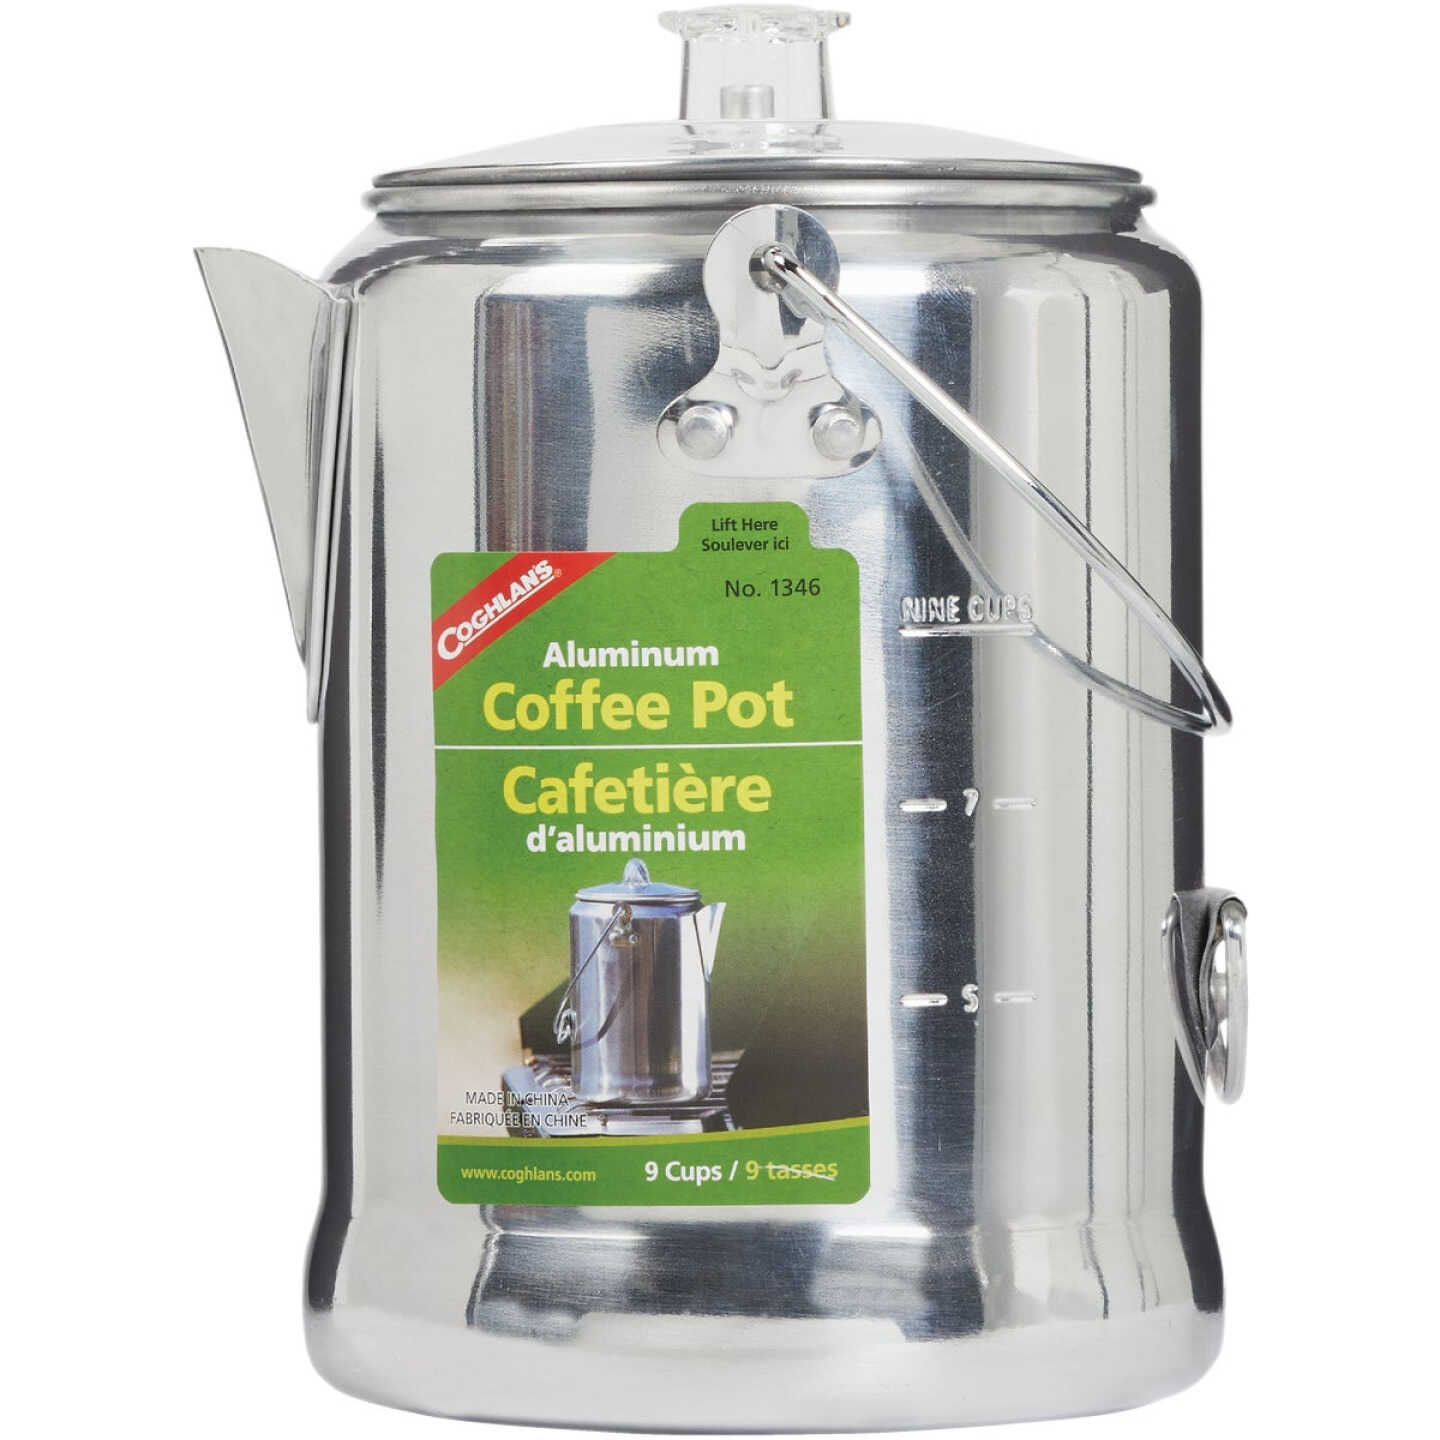 Camp Coffee Percolators & Pots